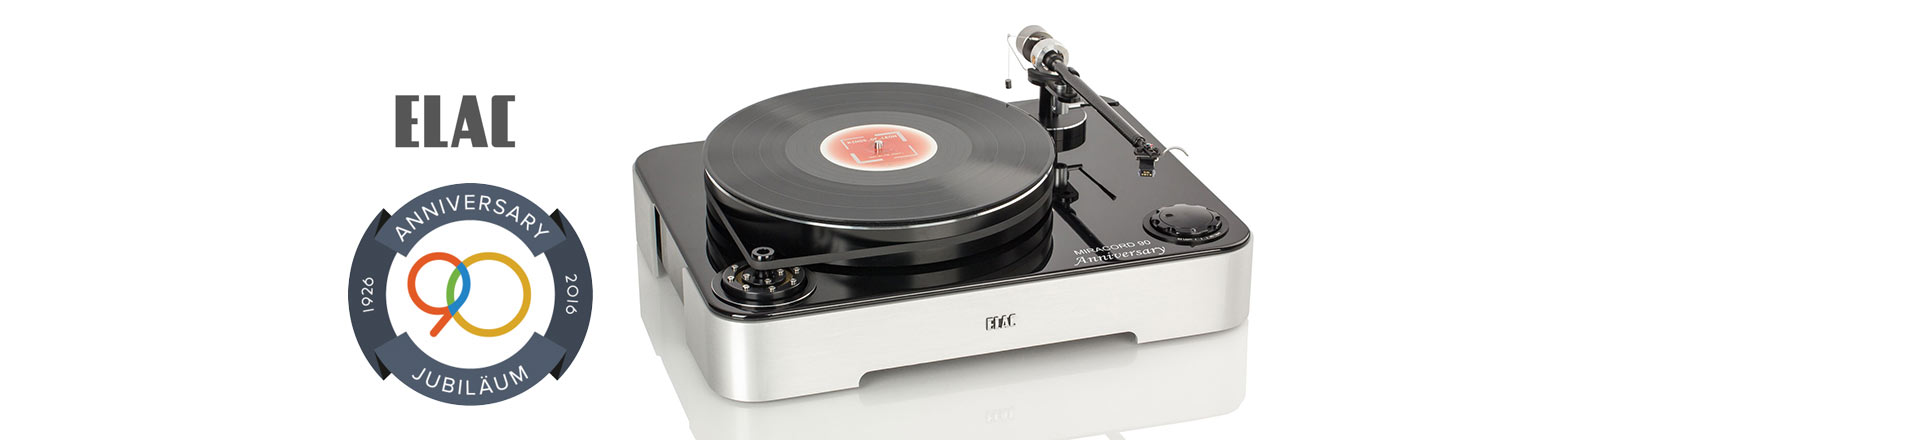 90-lecie firmy ELAC uwieńczone wyjątkowym gramofonem Miracord 90 Anniversary